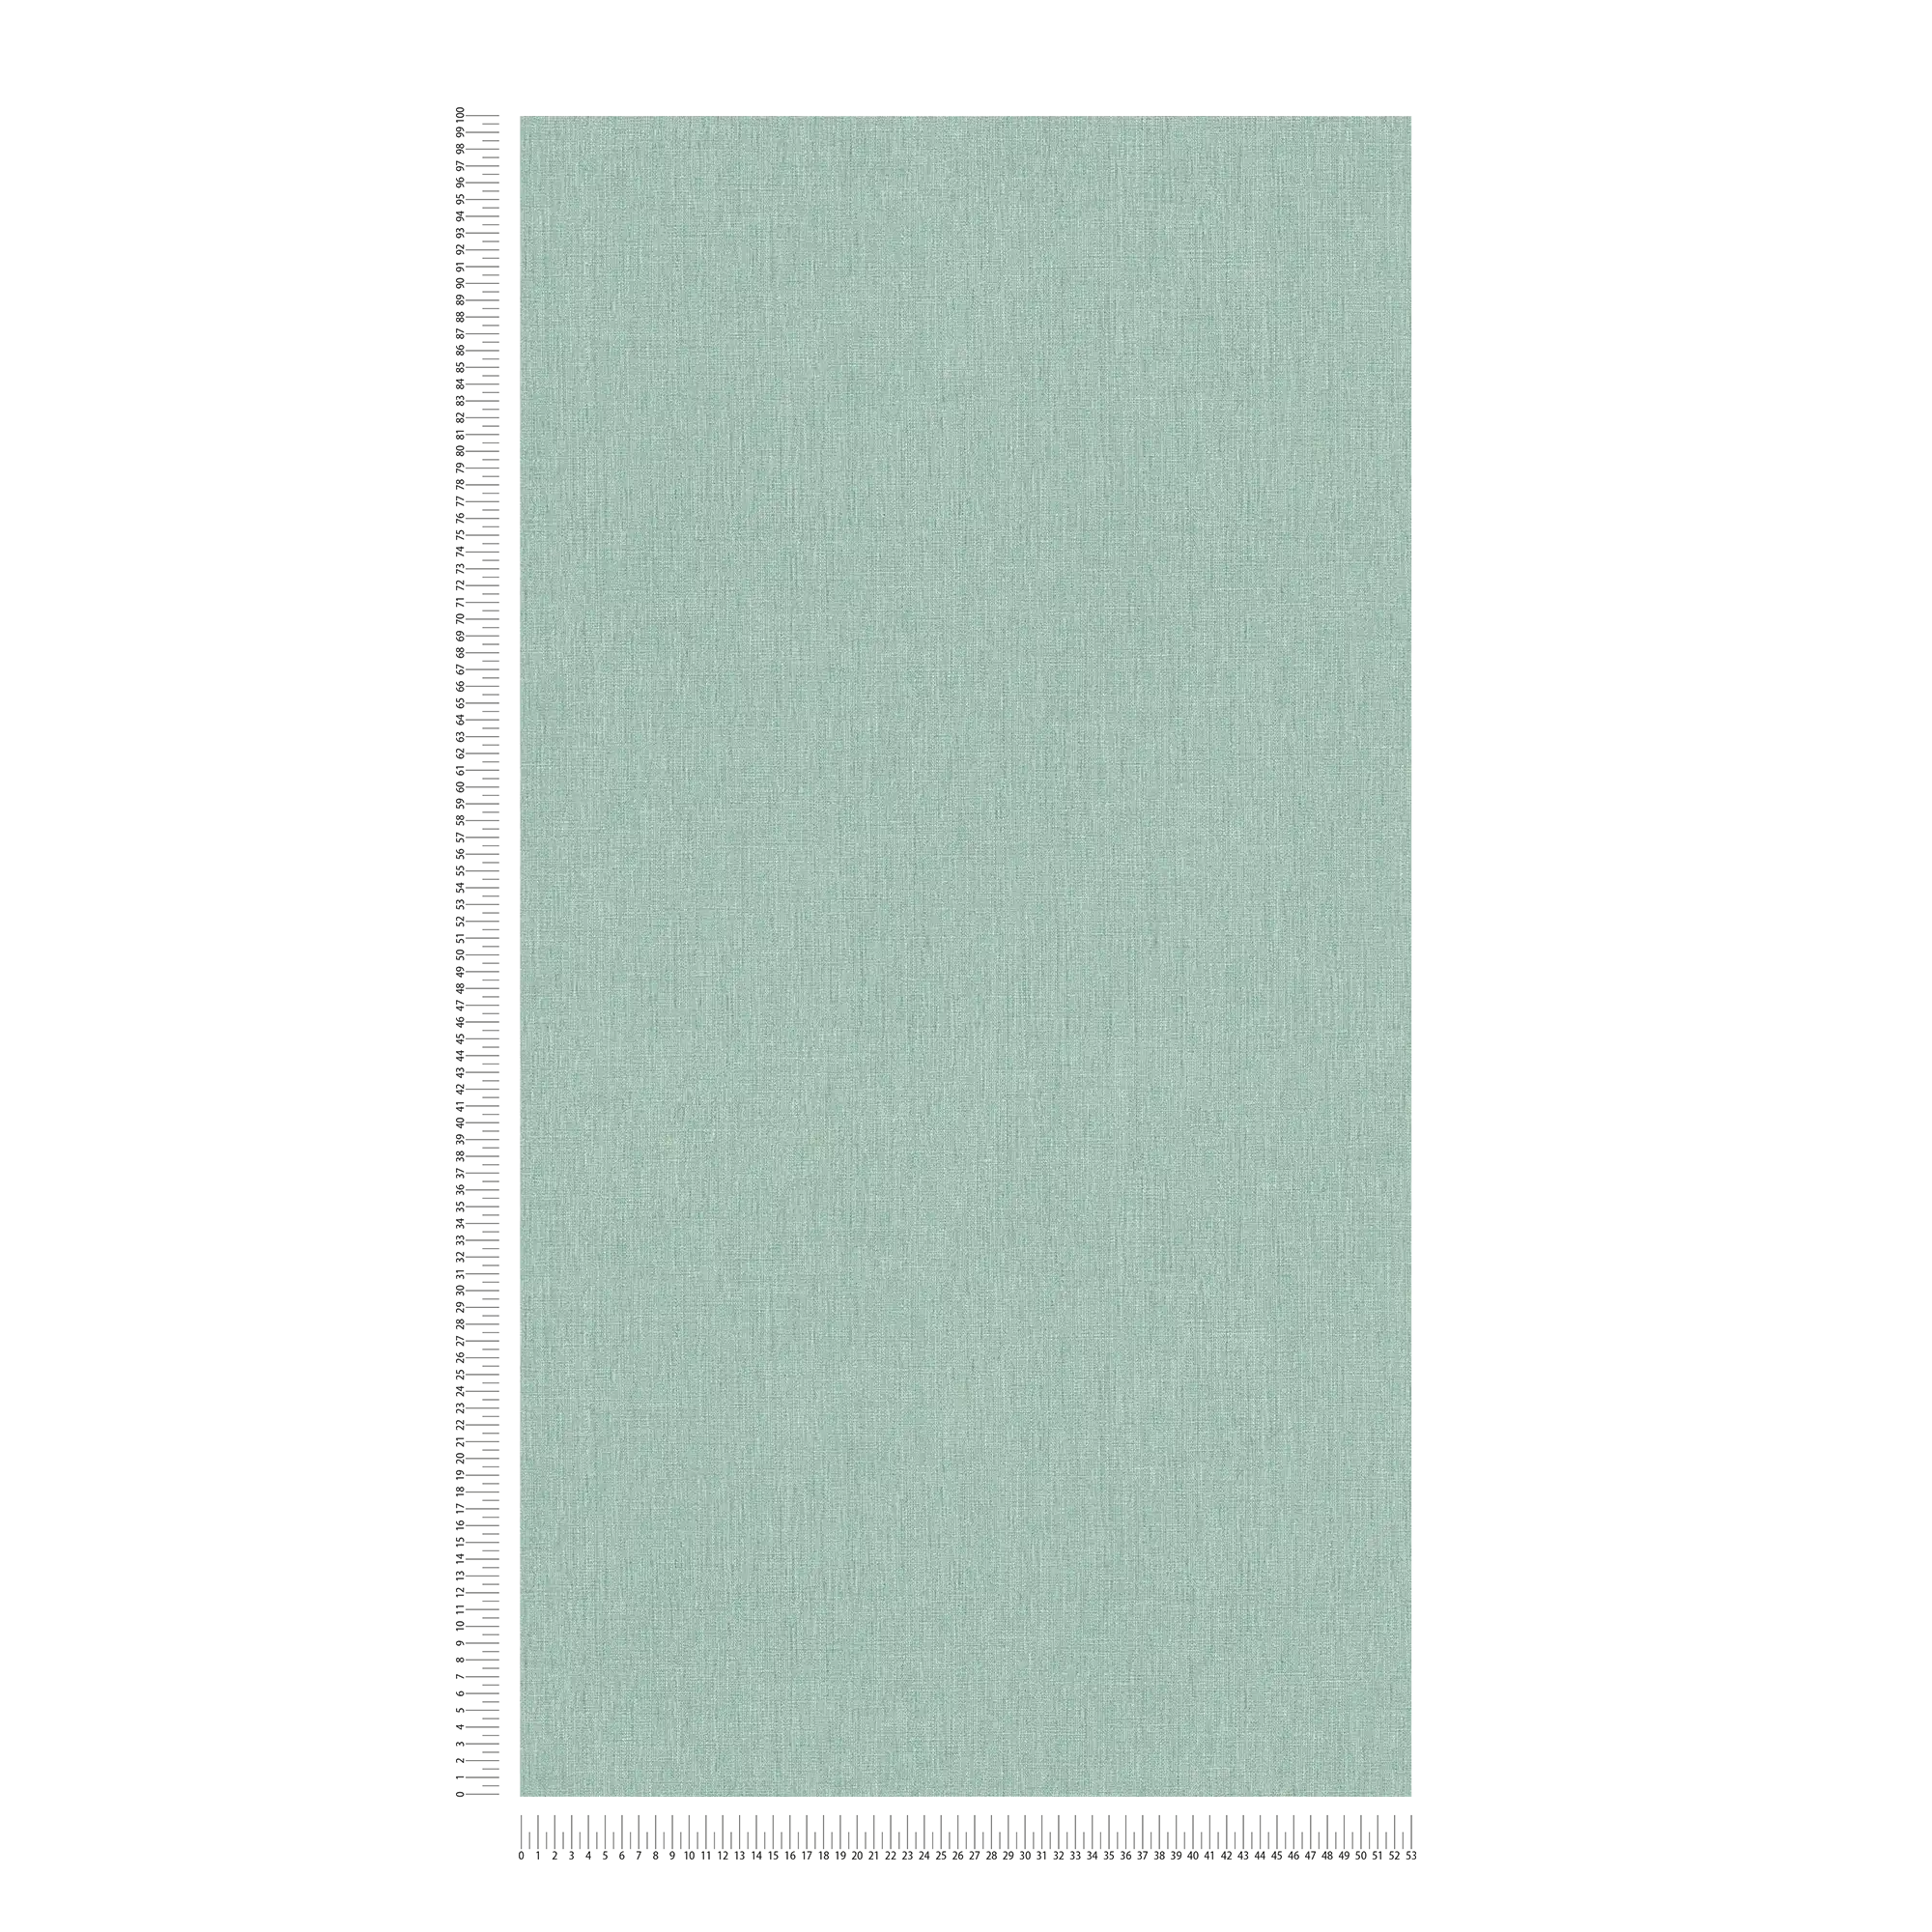             Carta da parati unitaria in look tessile - verde, turchese, blu
        